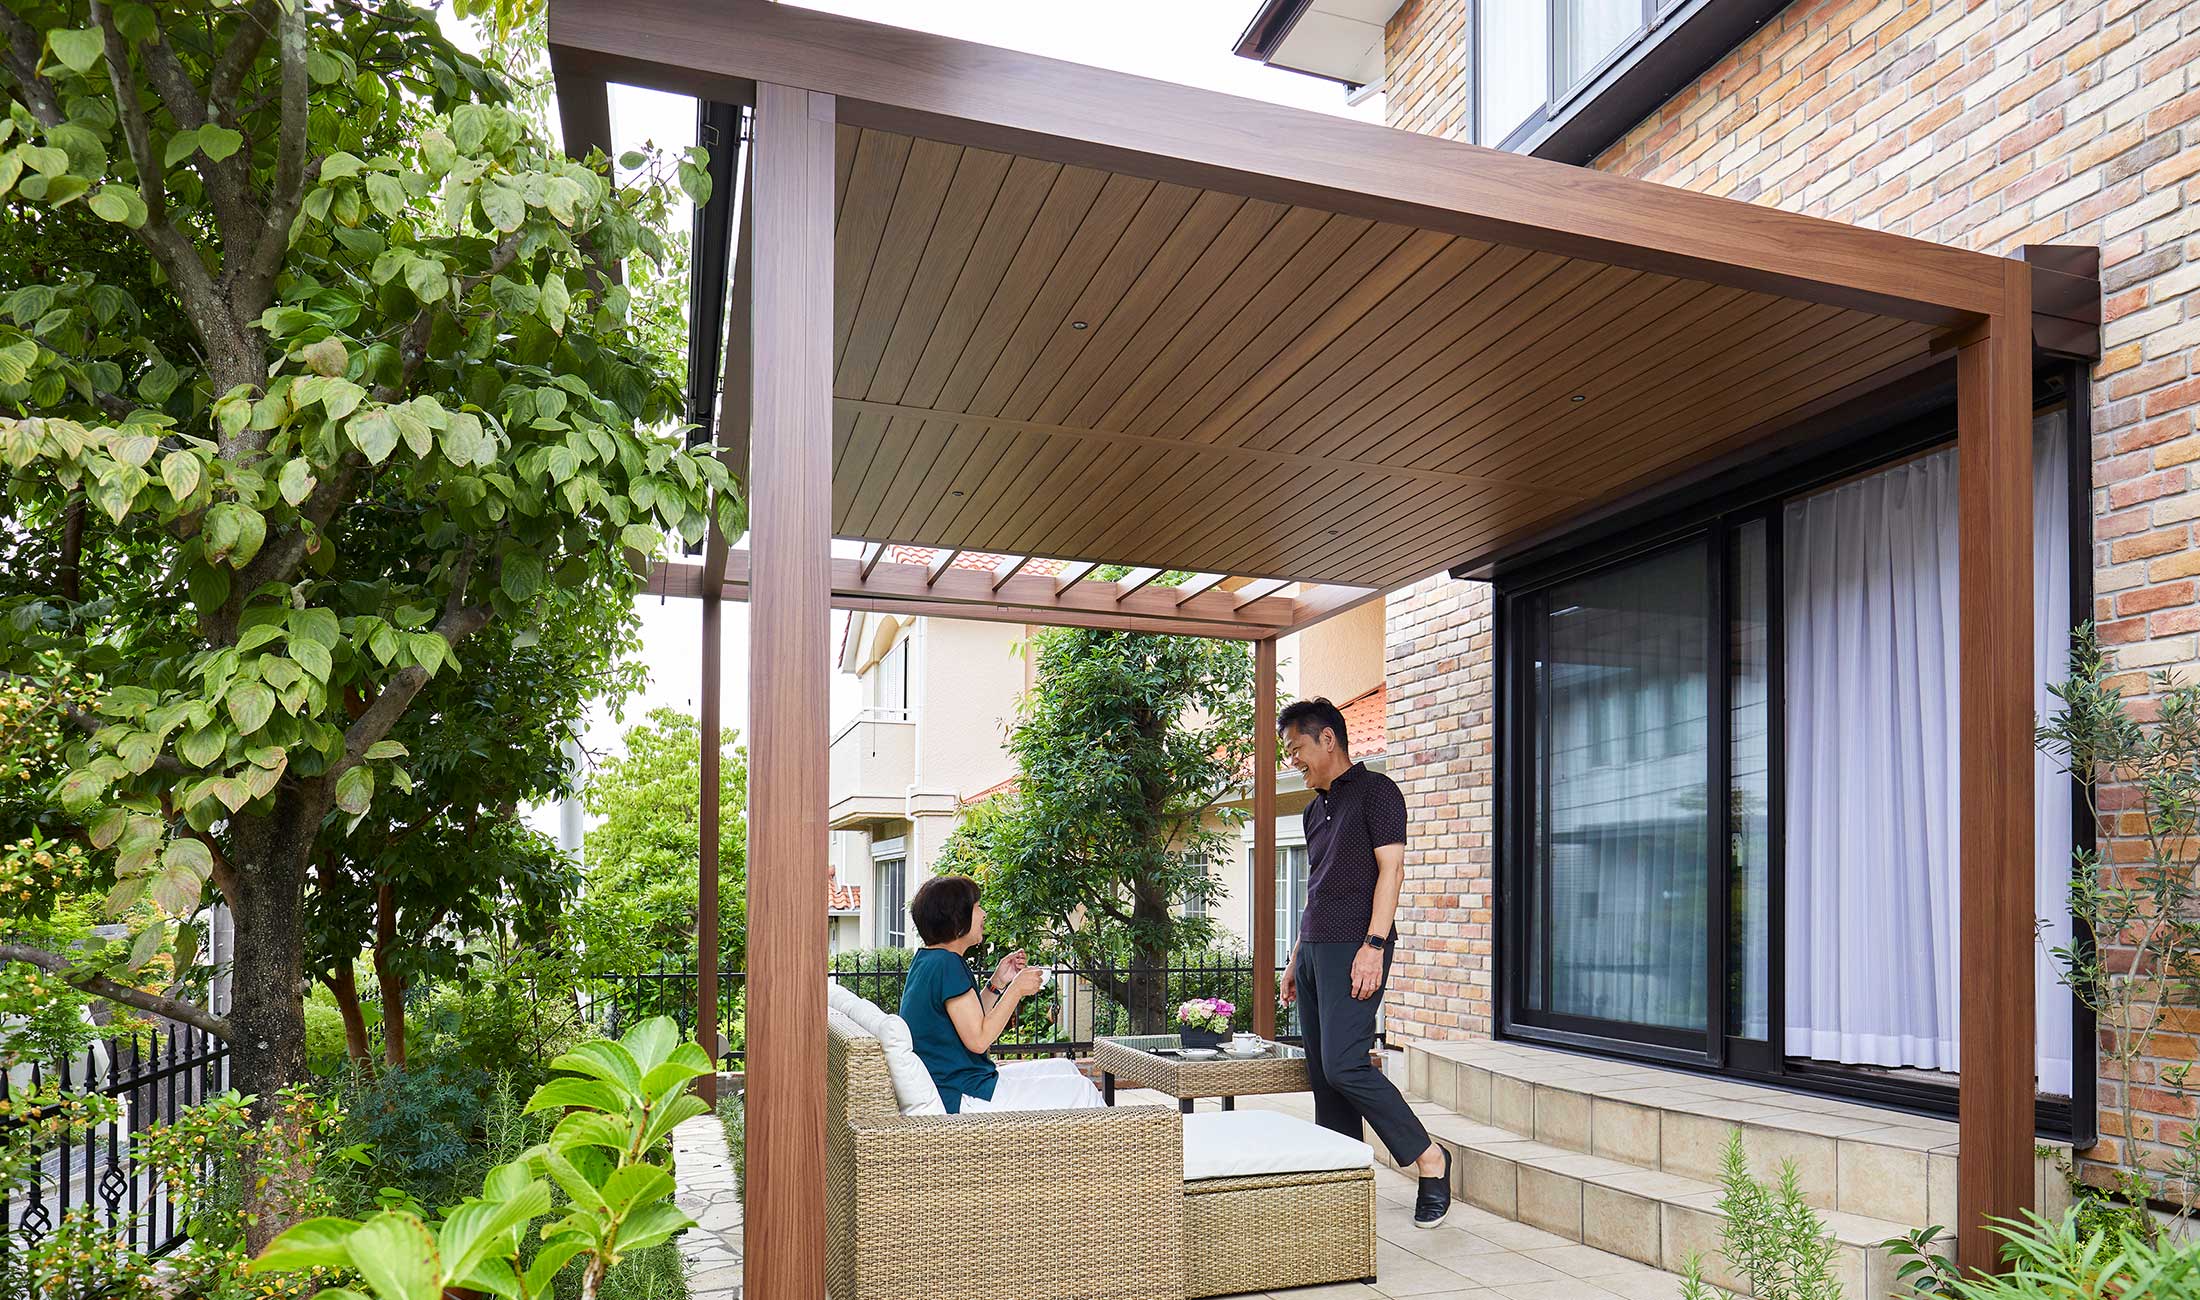 横浜の庭リフォーム。デザイン性のある屋根付きのテラス。